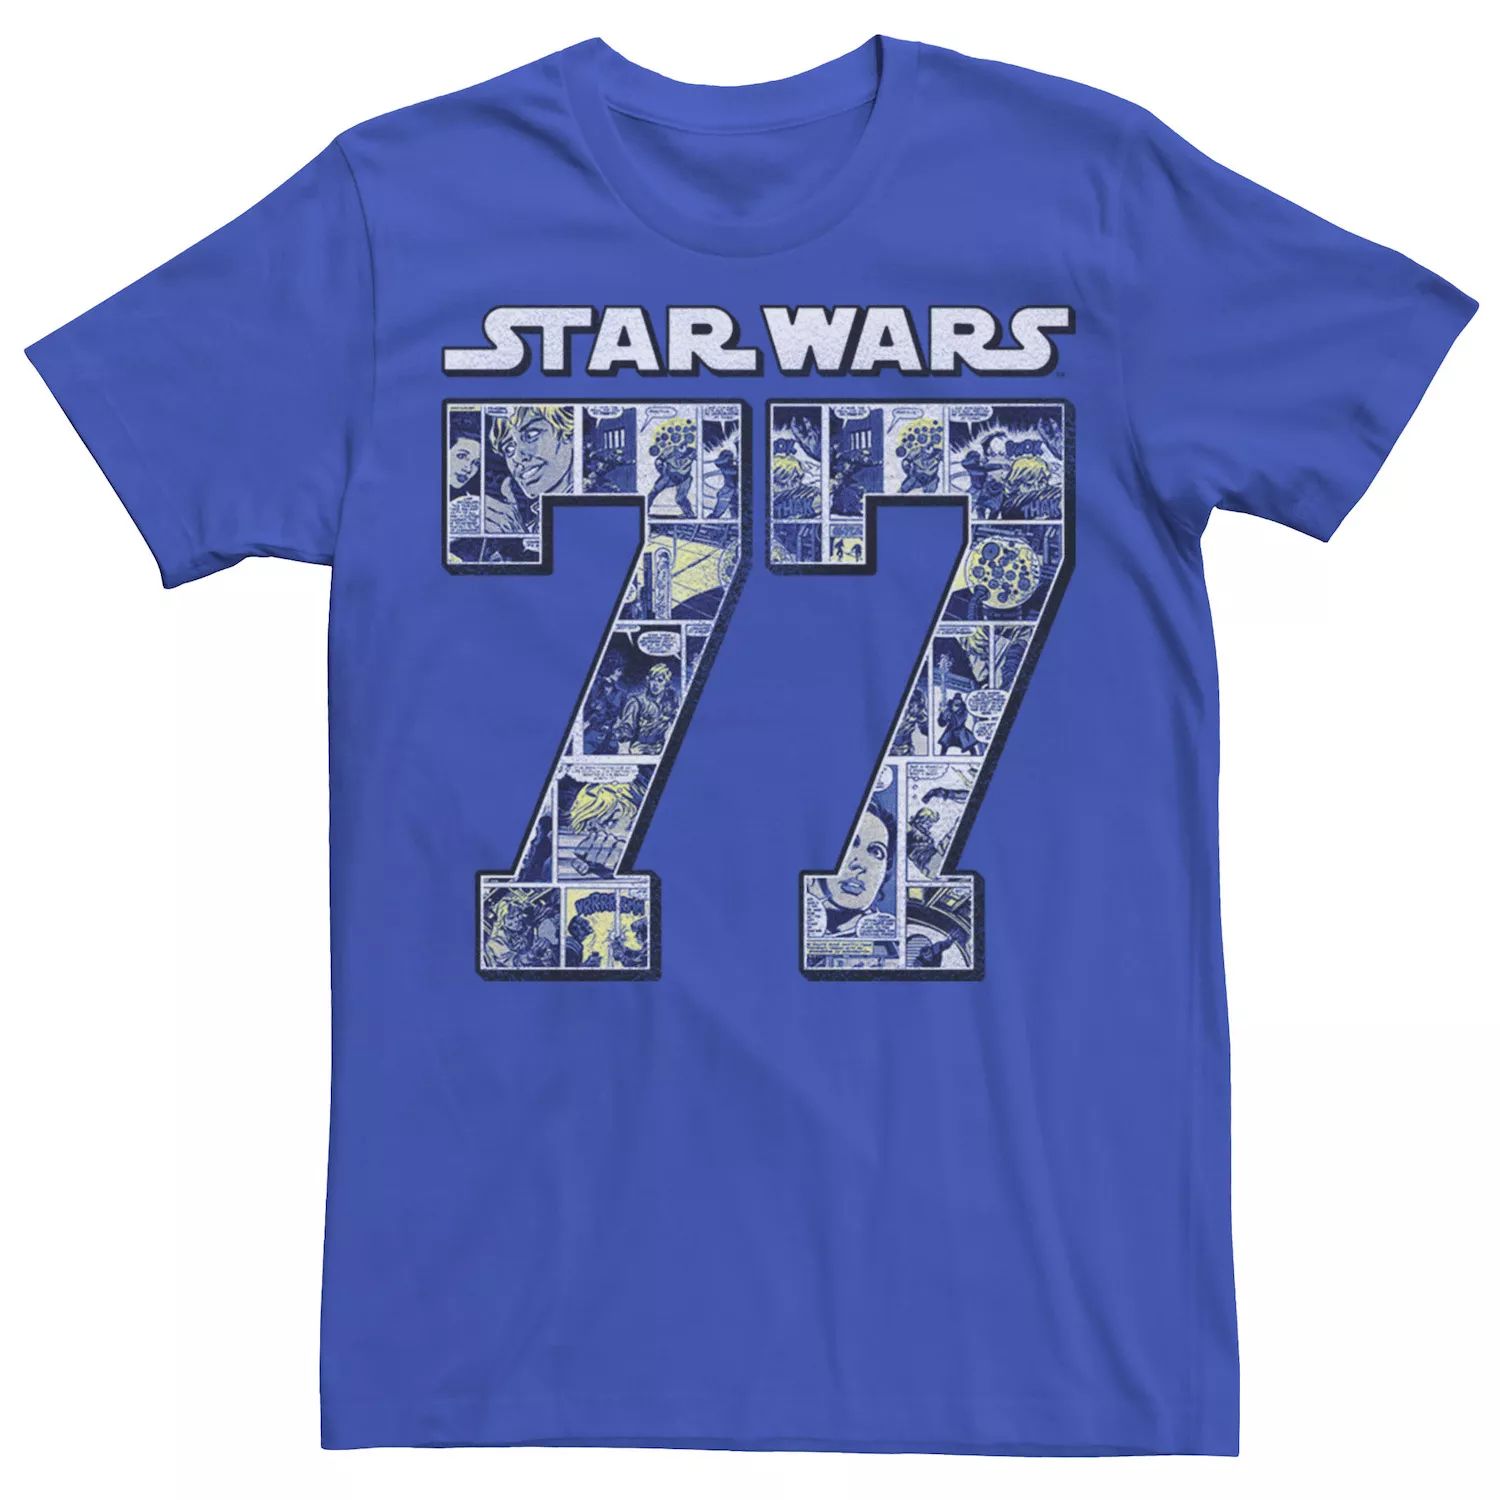 Мужская футболка с логотипом '77 с изображением комиксов Star Wars